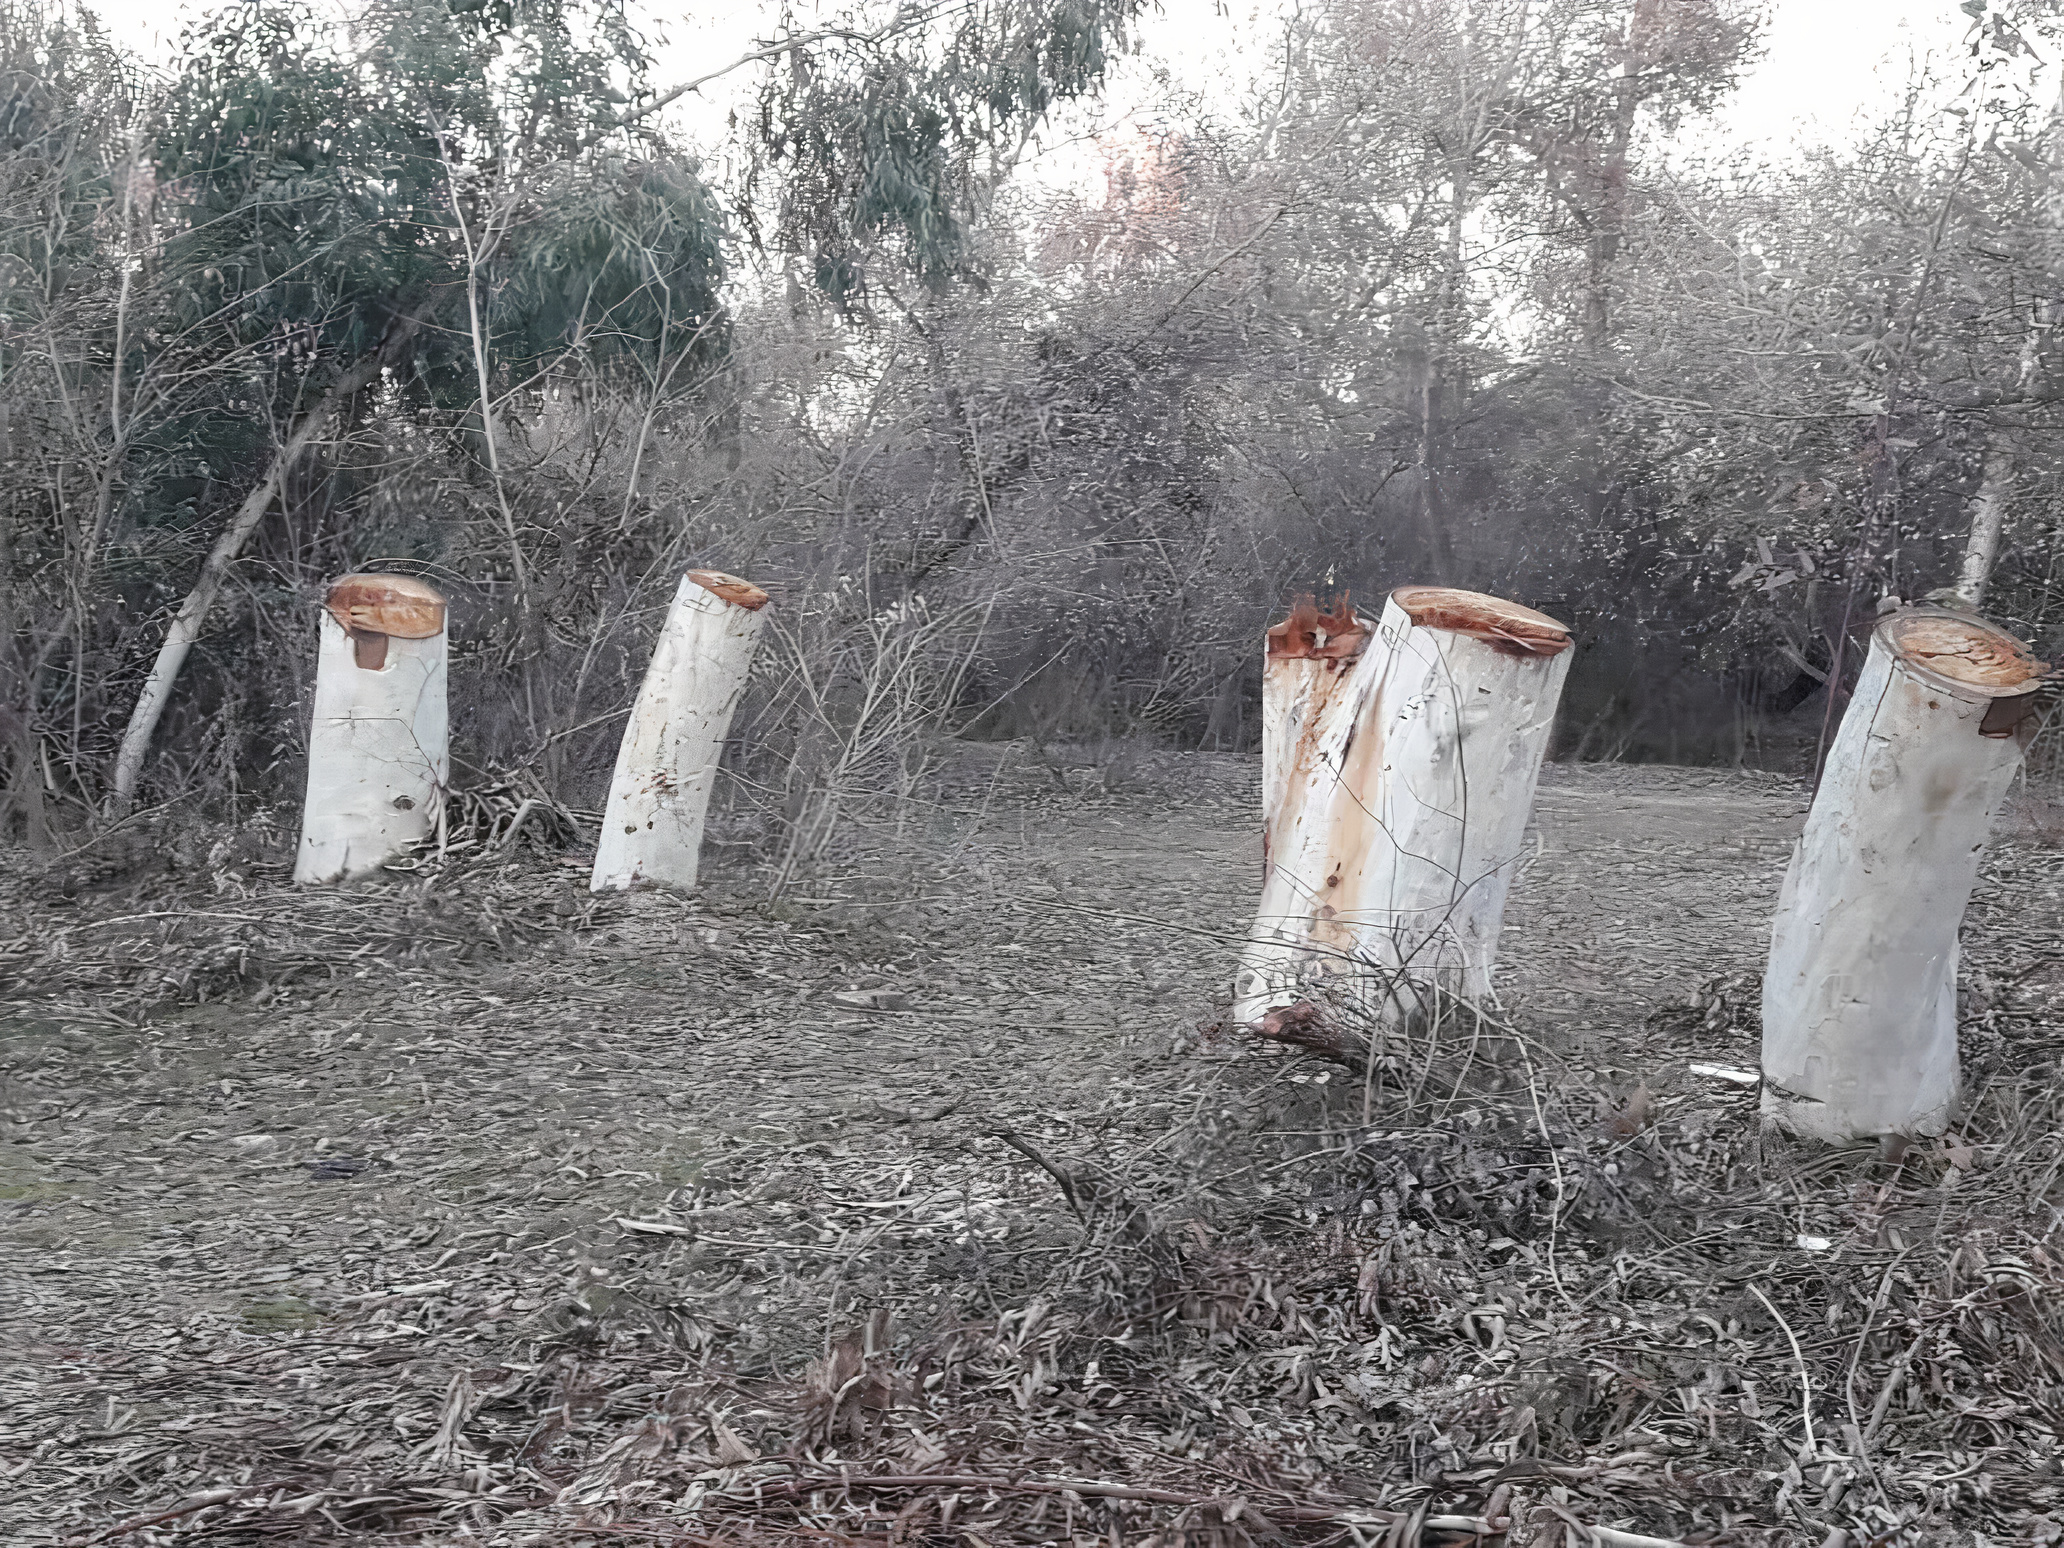 عاملان قطع درختان بیشه عباس آباد دزفول دستگیر شدند